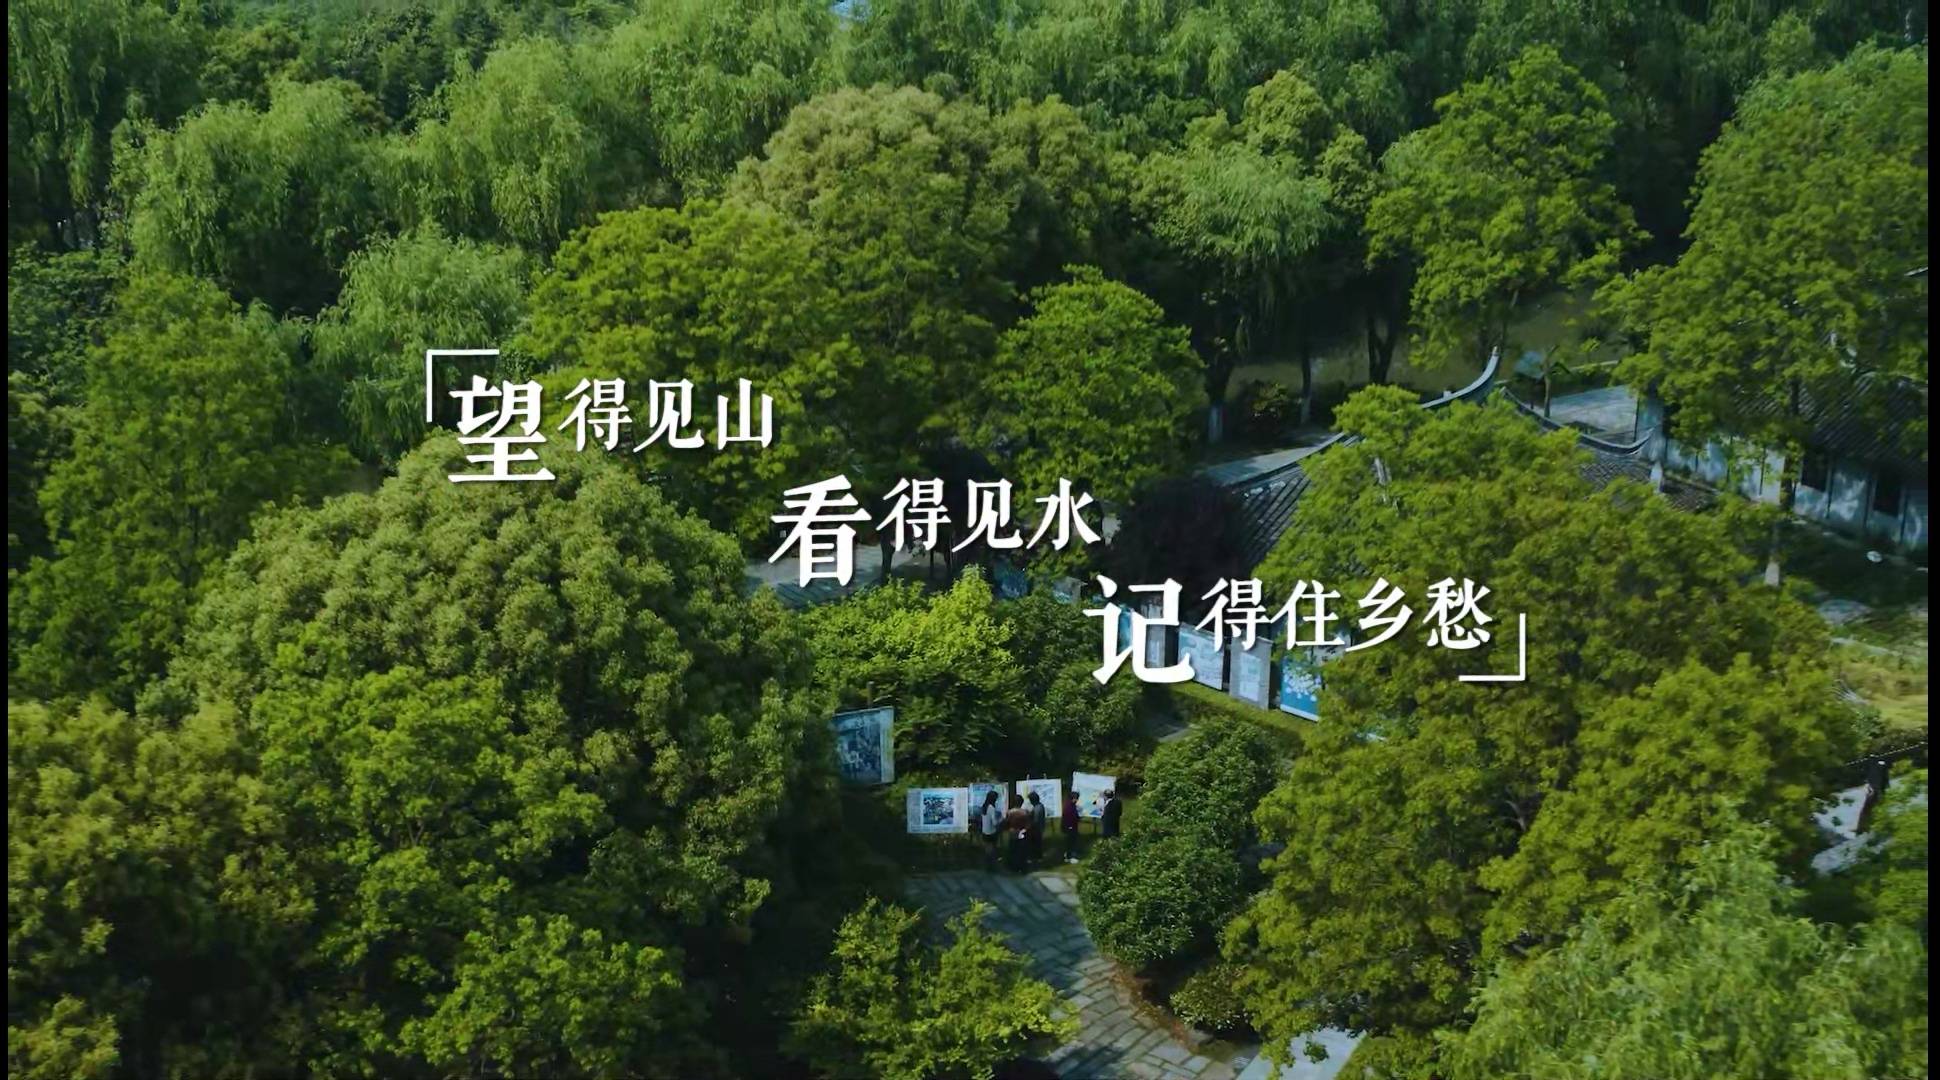 上海有哪些特色小镇？这场电视纪录片大赛把本地的诗意野趣、创意文旅拍给你看